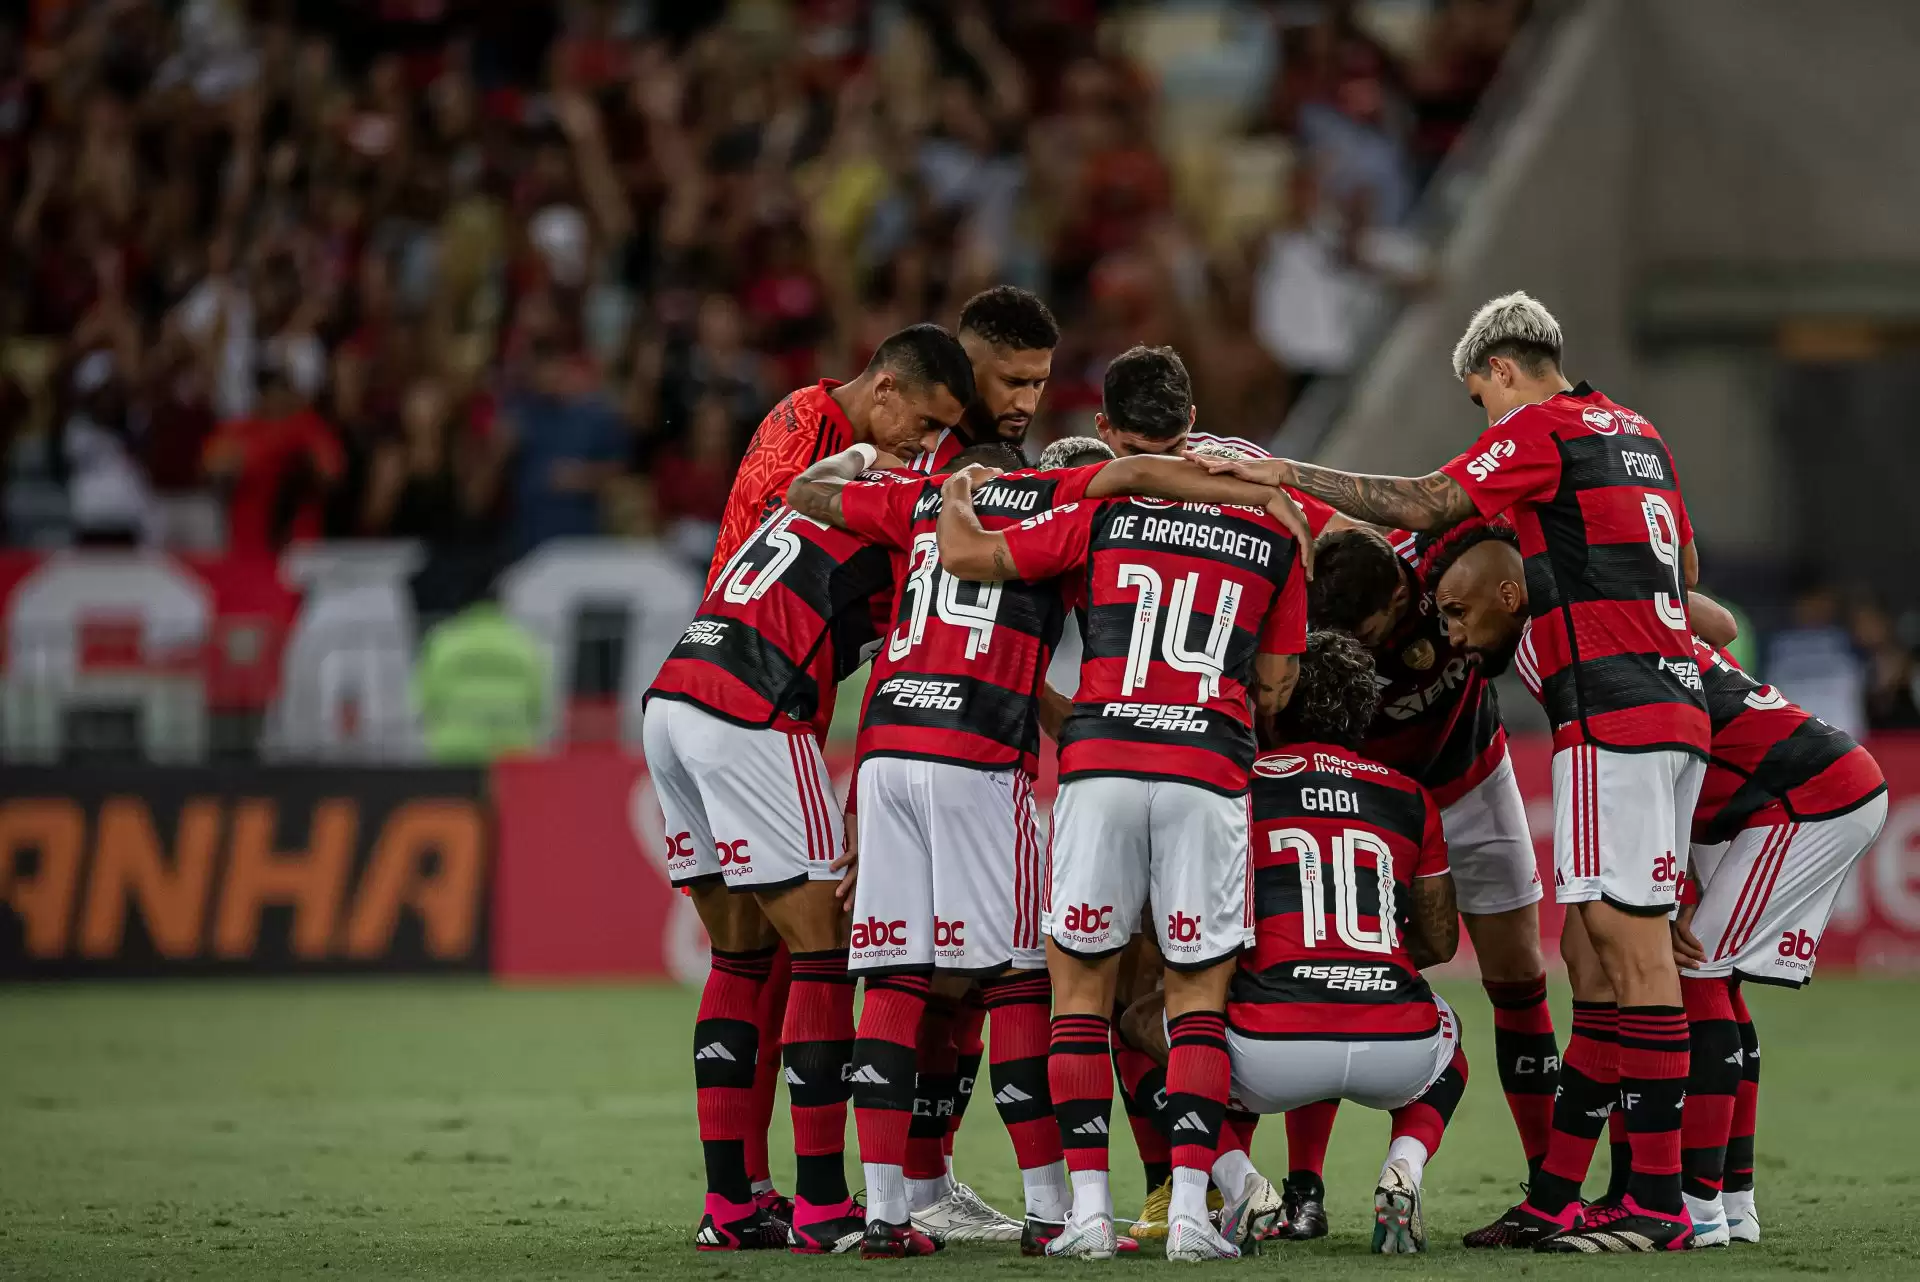 Com gols no começo do jogo, Flamengo derrota o Botafogo e se sustenta na  liderança